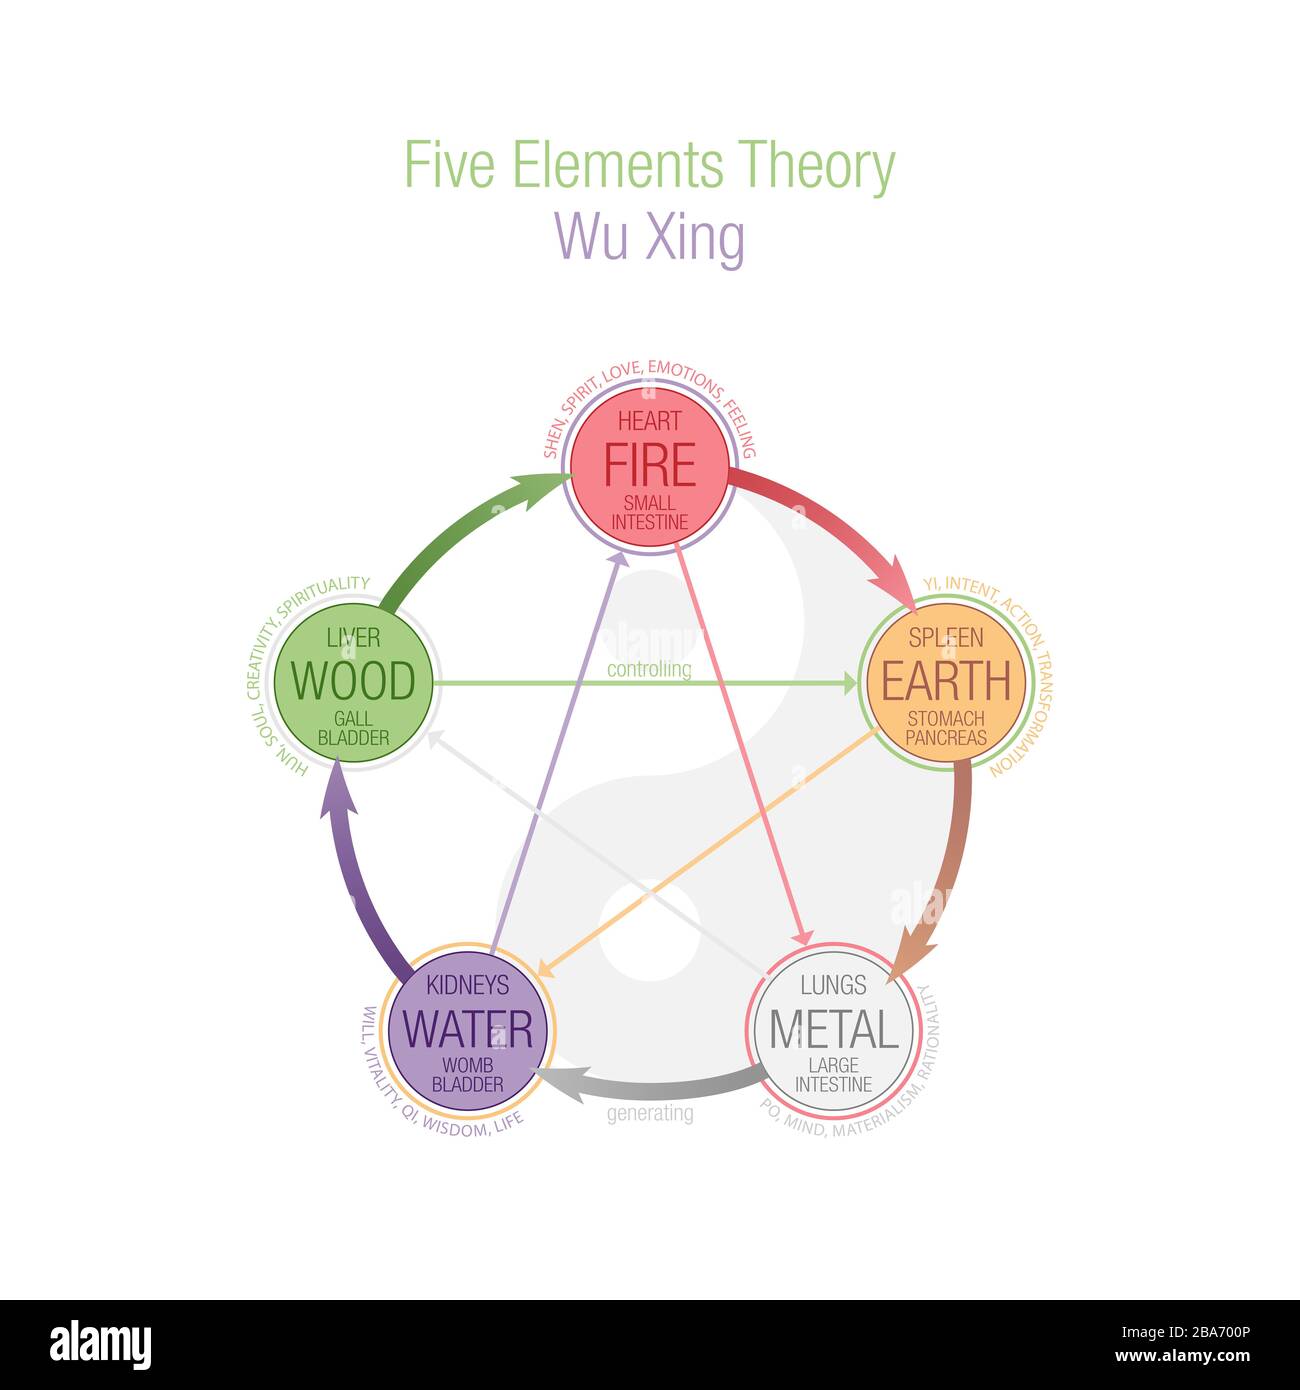 Cinq éléments théorie illustration colorée. Wuxing, Wu Xing, 5 éléments du Daoisme et de la TCM, médecine chinoise traditionnelle. Illustration conceptuelle, couleur Banque D'Images